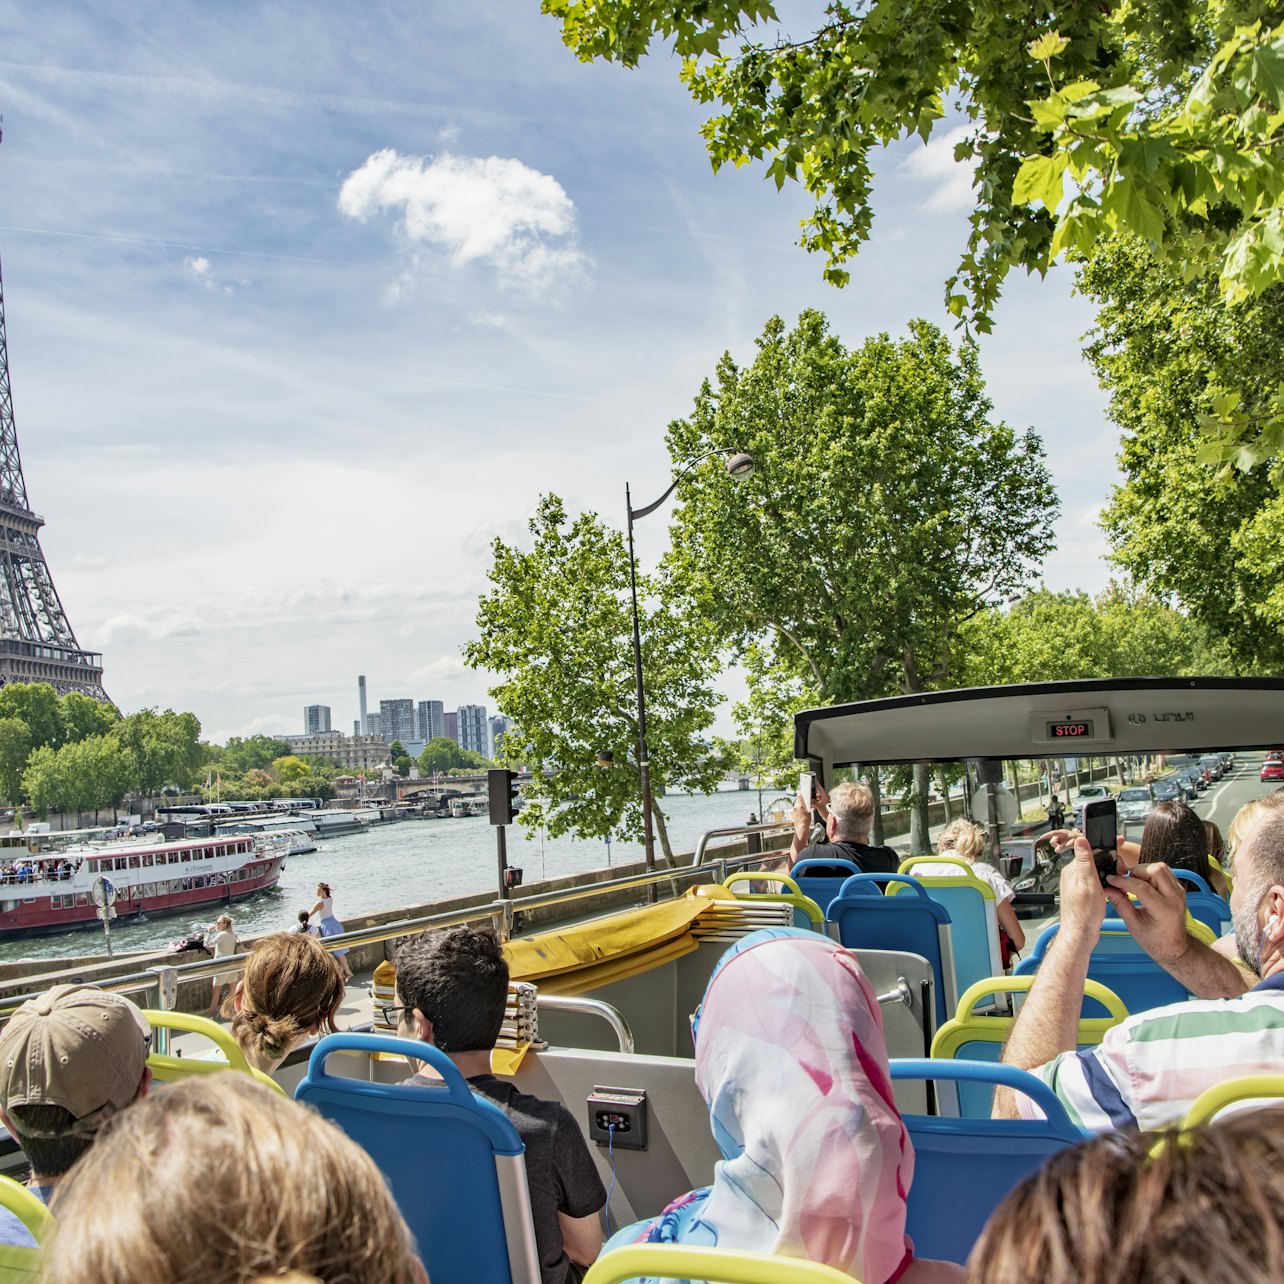 Tootbus Paris: Tour en bus turístico - Alojamientos en Paris